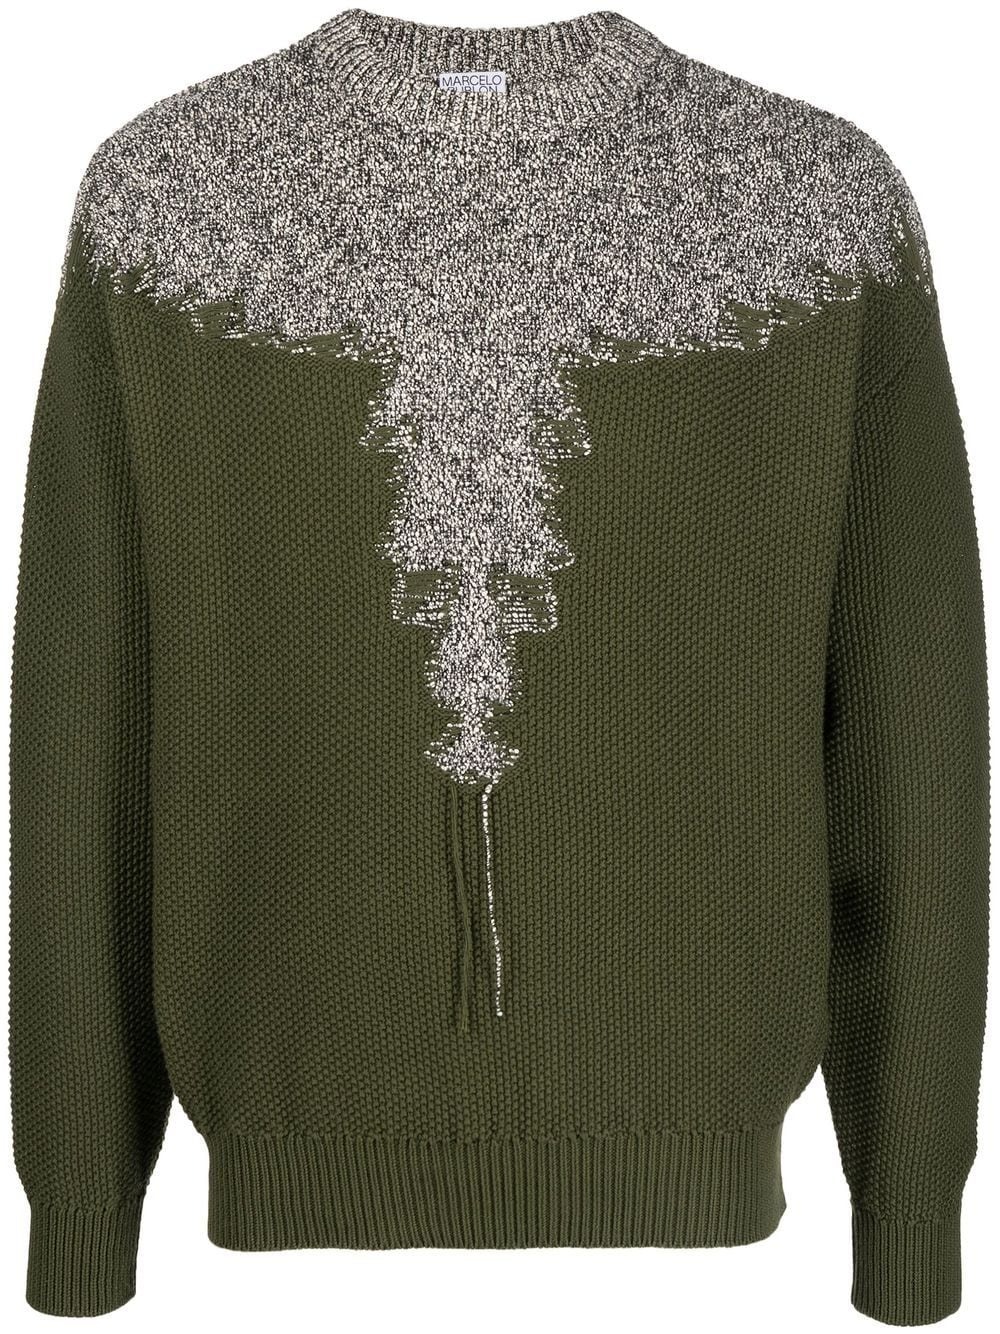 Buy Hoodies and sweatshirts Marcelo Burlon County of Milan 